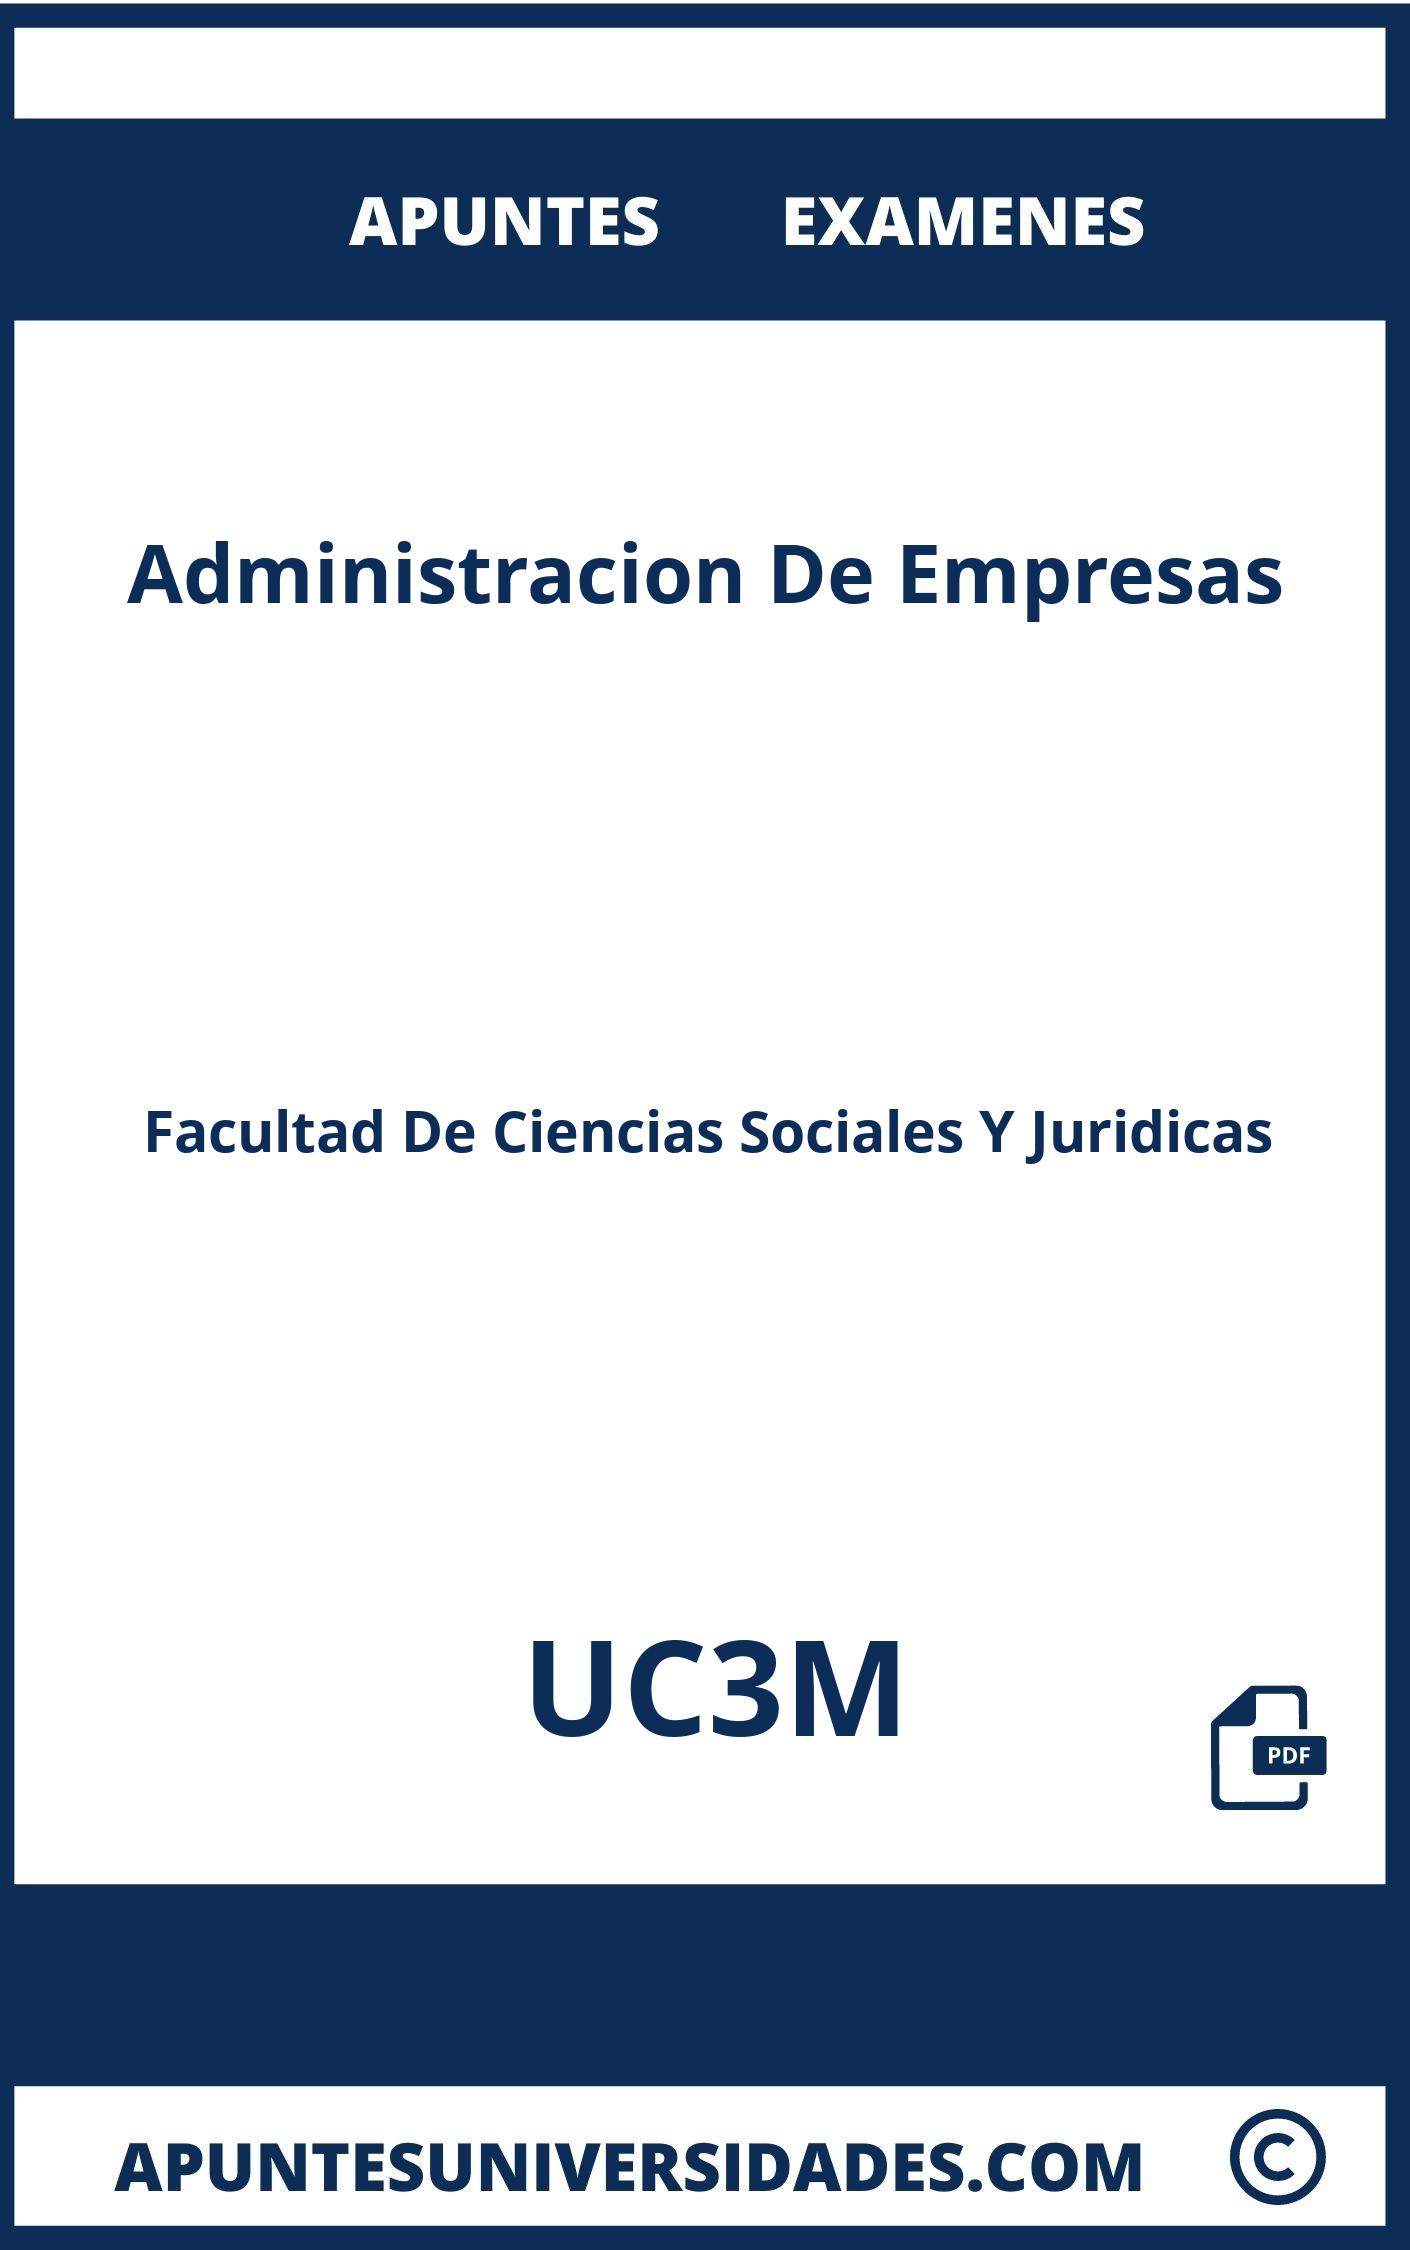 Examenes y Apuntes Administracion De Empresas UC3M